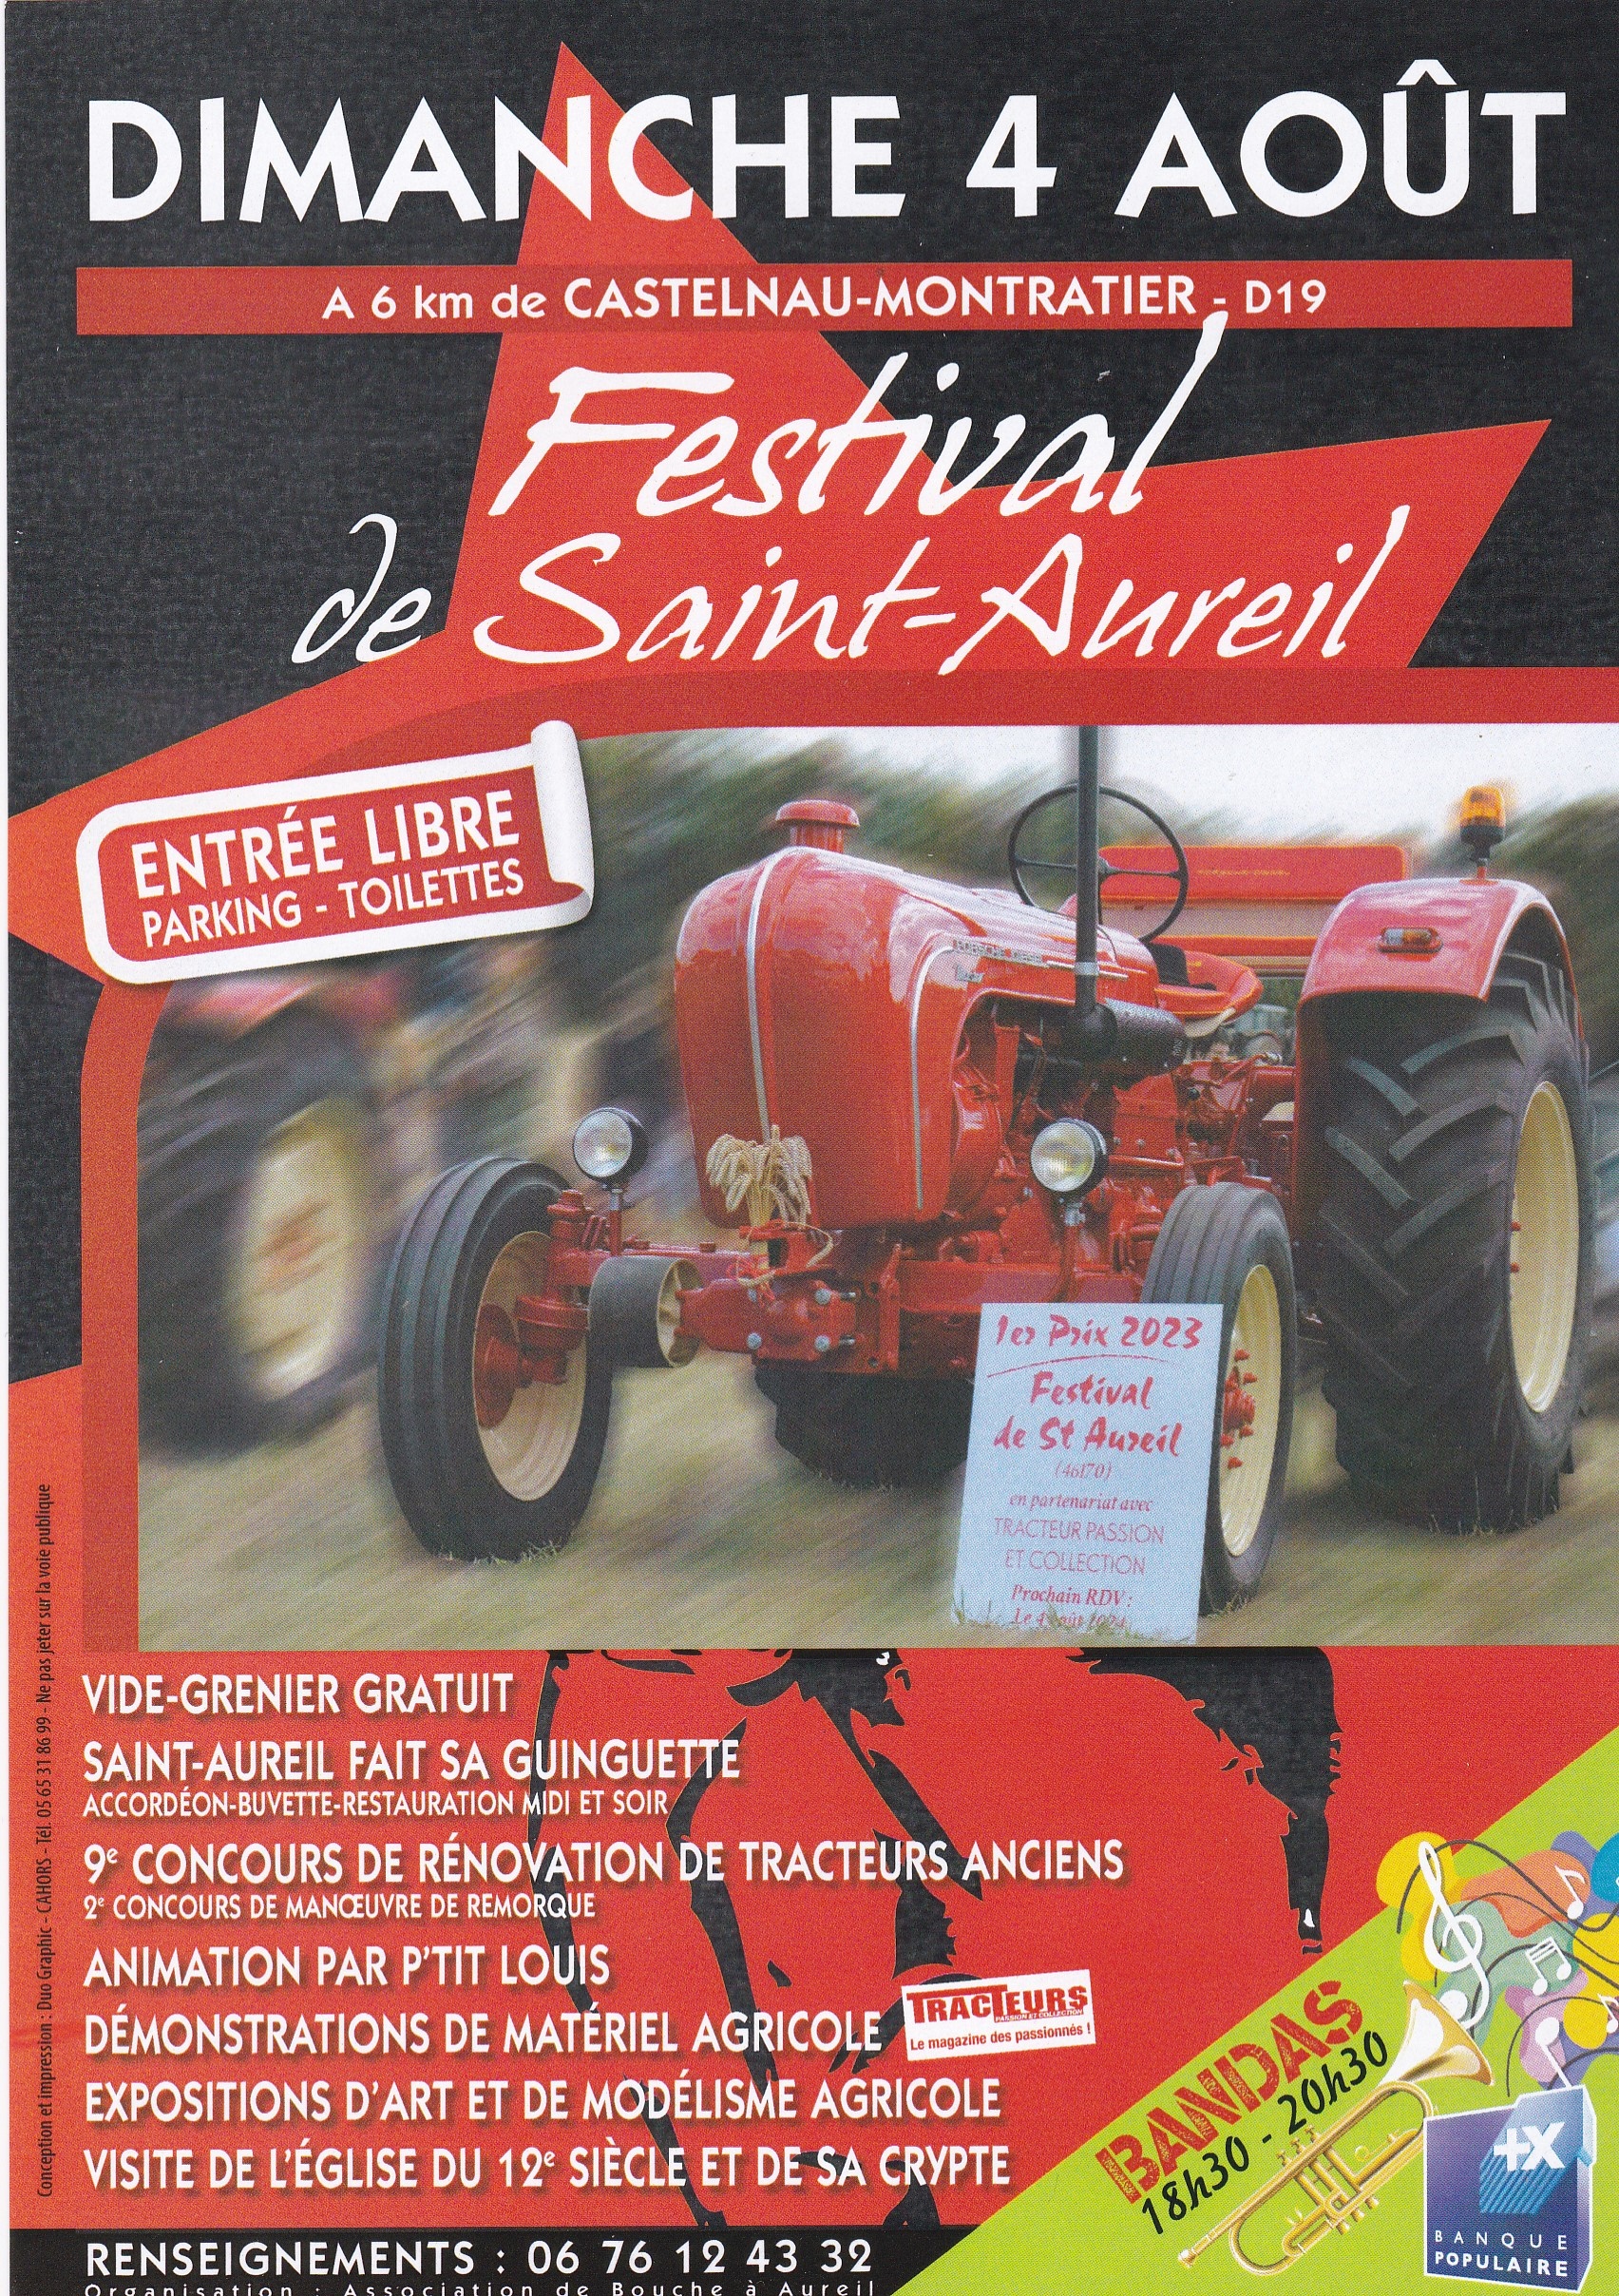 Figeac : Festival de Saint-Aureil